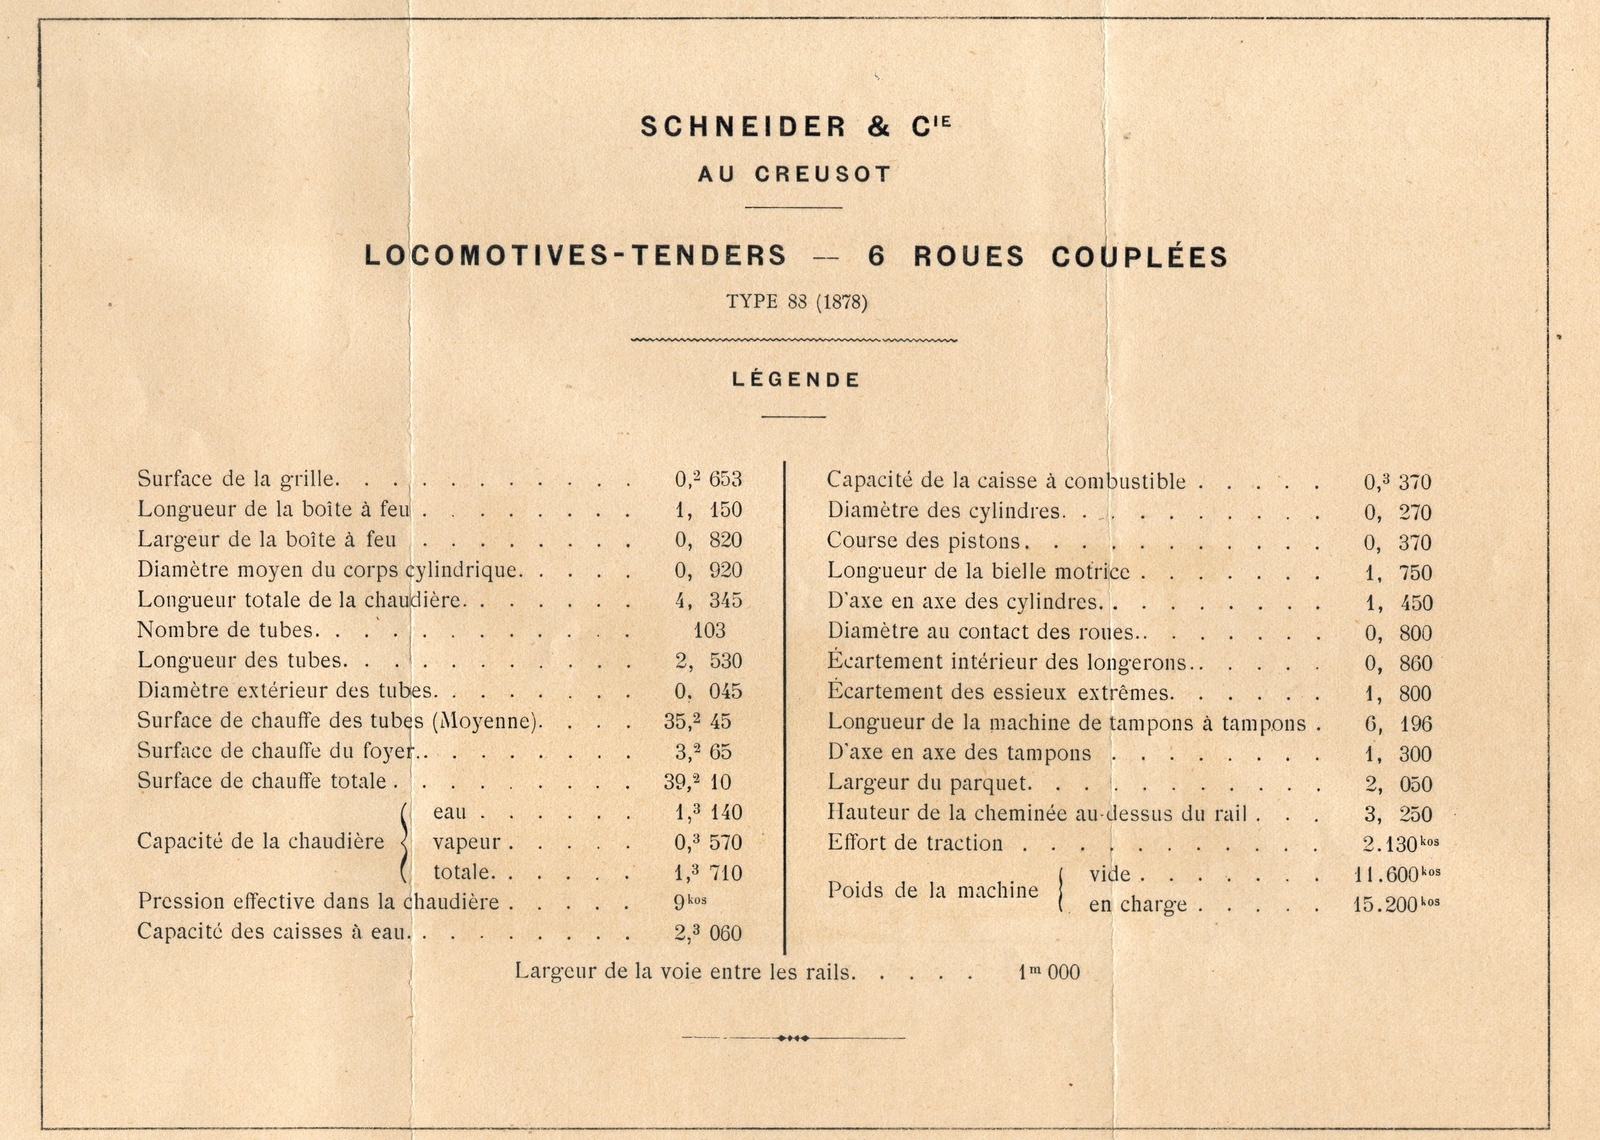 Caractéristiques de la locomotive de type 88 (1878) de Schneider & Cie.